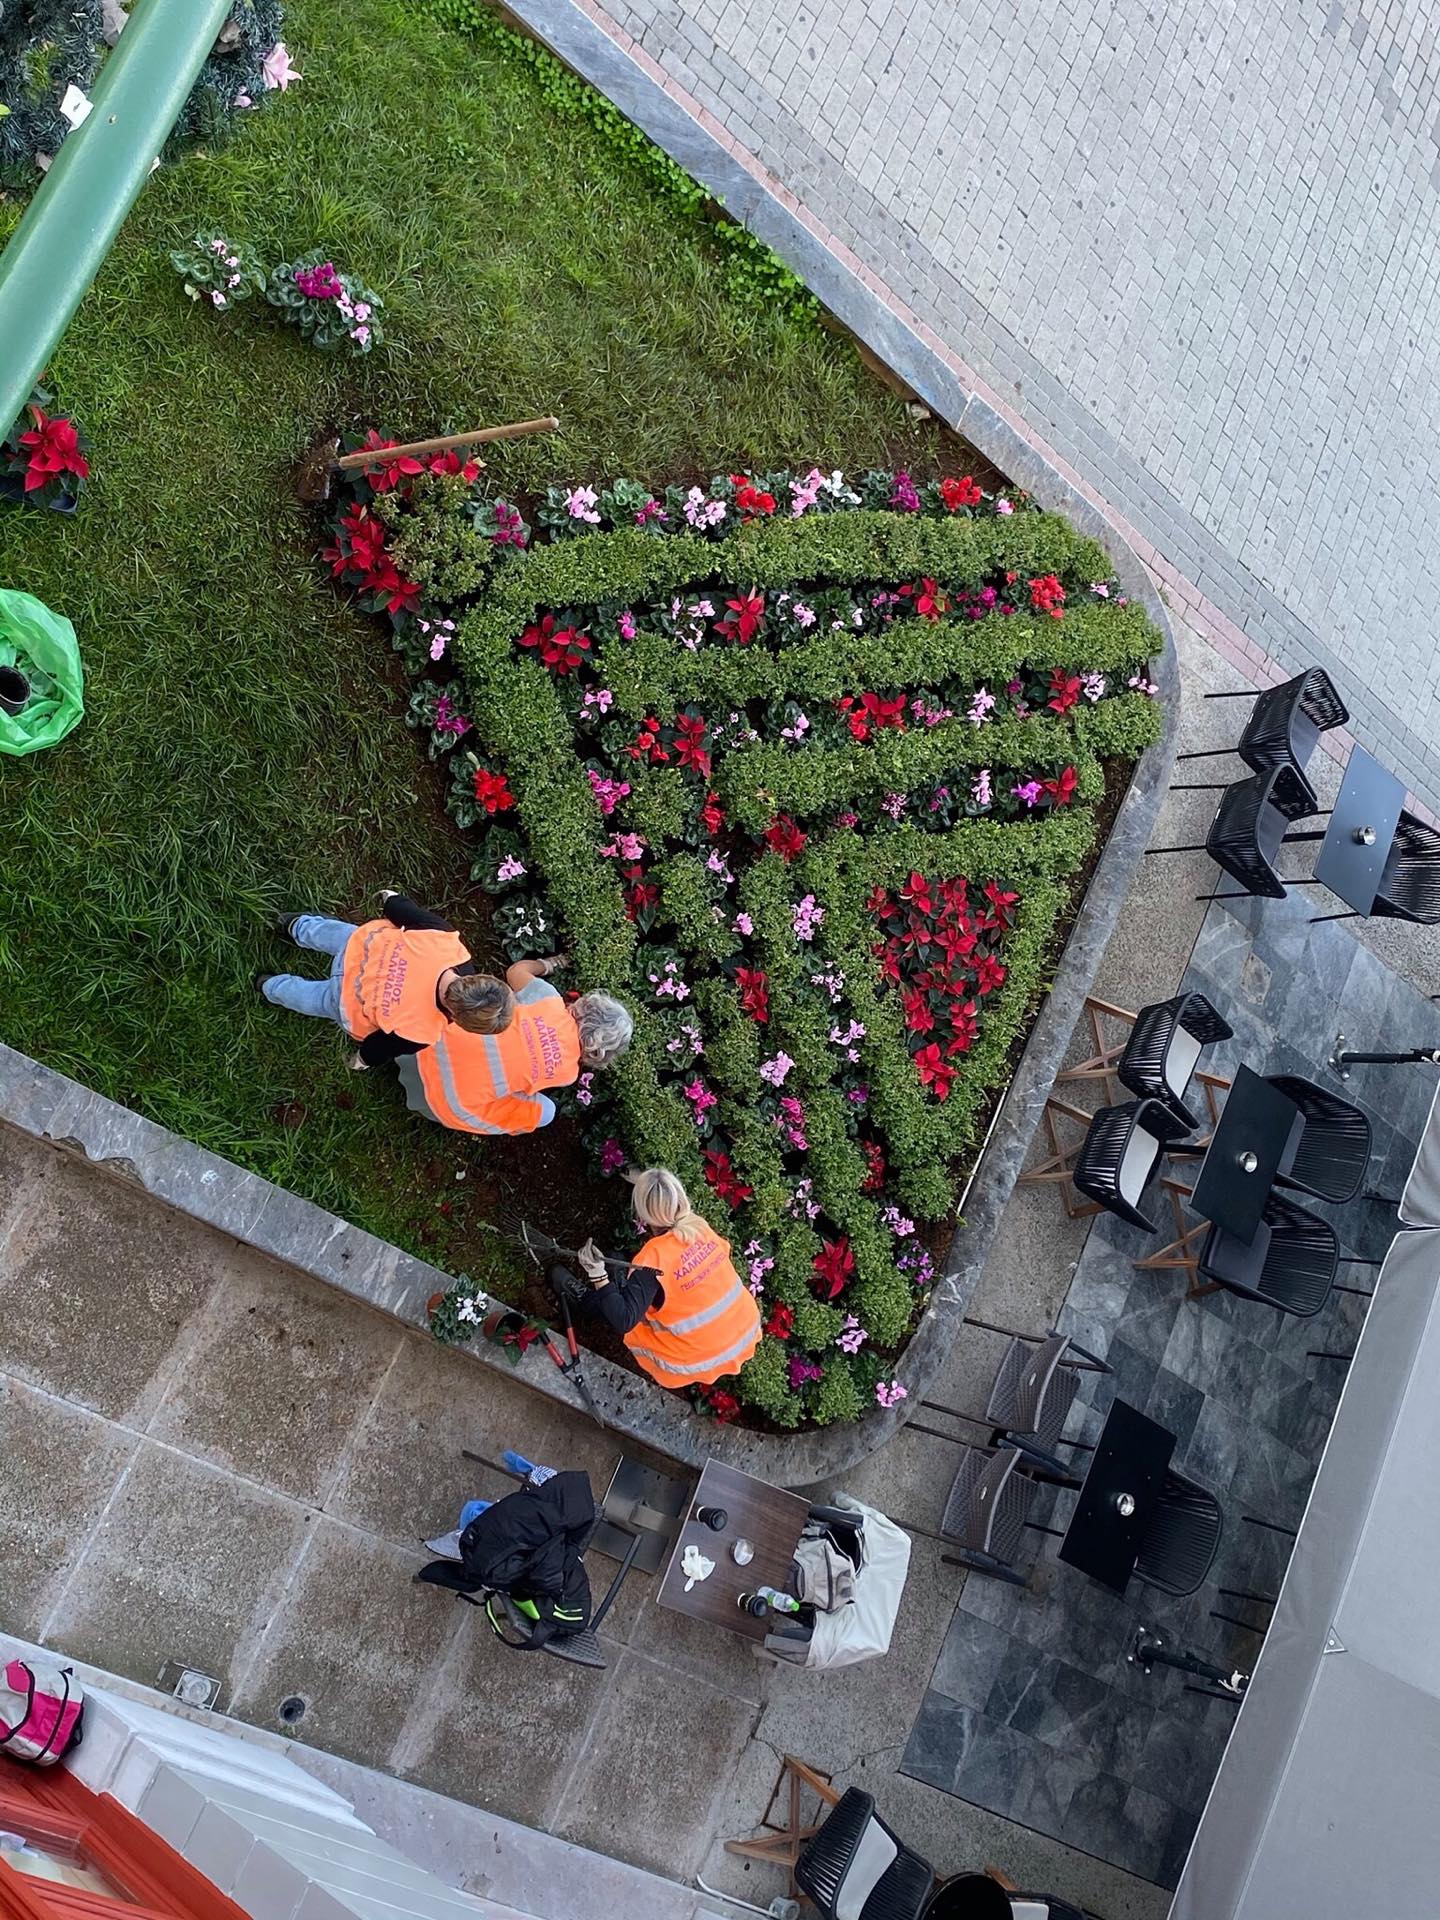 Στη φύτευση καλλωπιστικών φυτών και λουλουδιών προχώρησαν συνεργεία της Υπηρεσίας Πρασίνου του Δήμου Χαλκιδέων